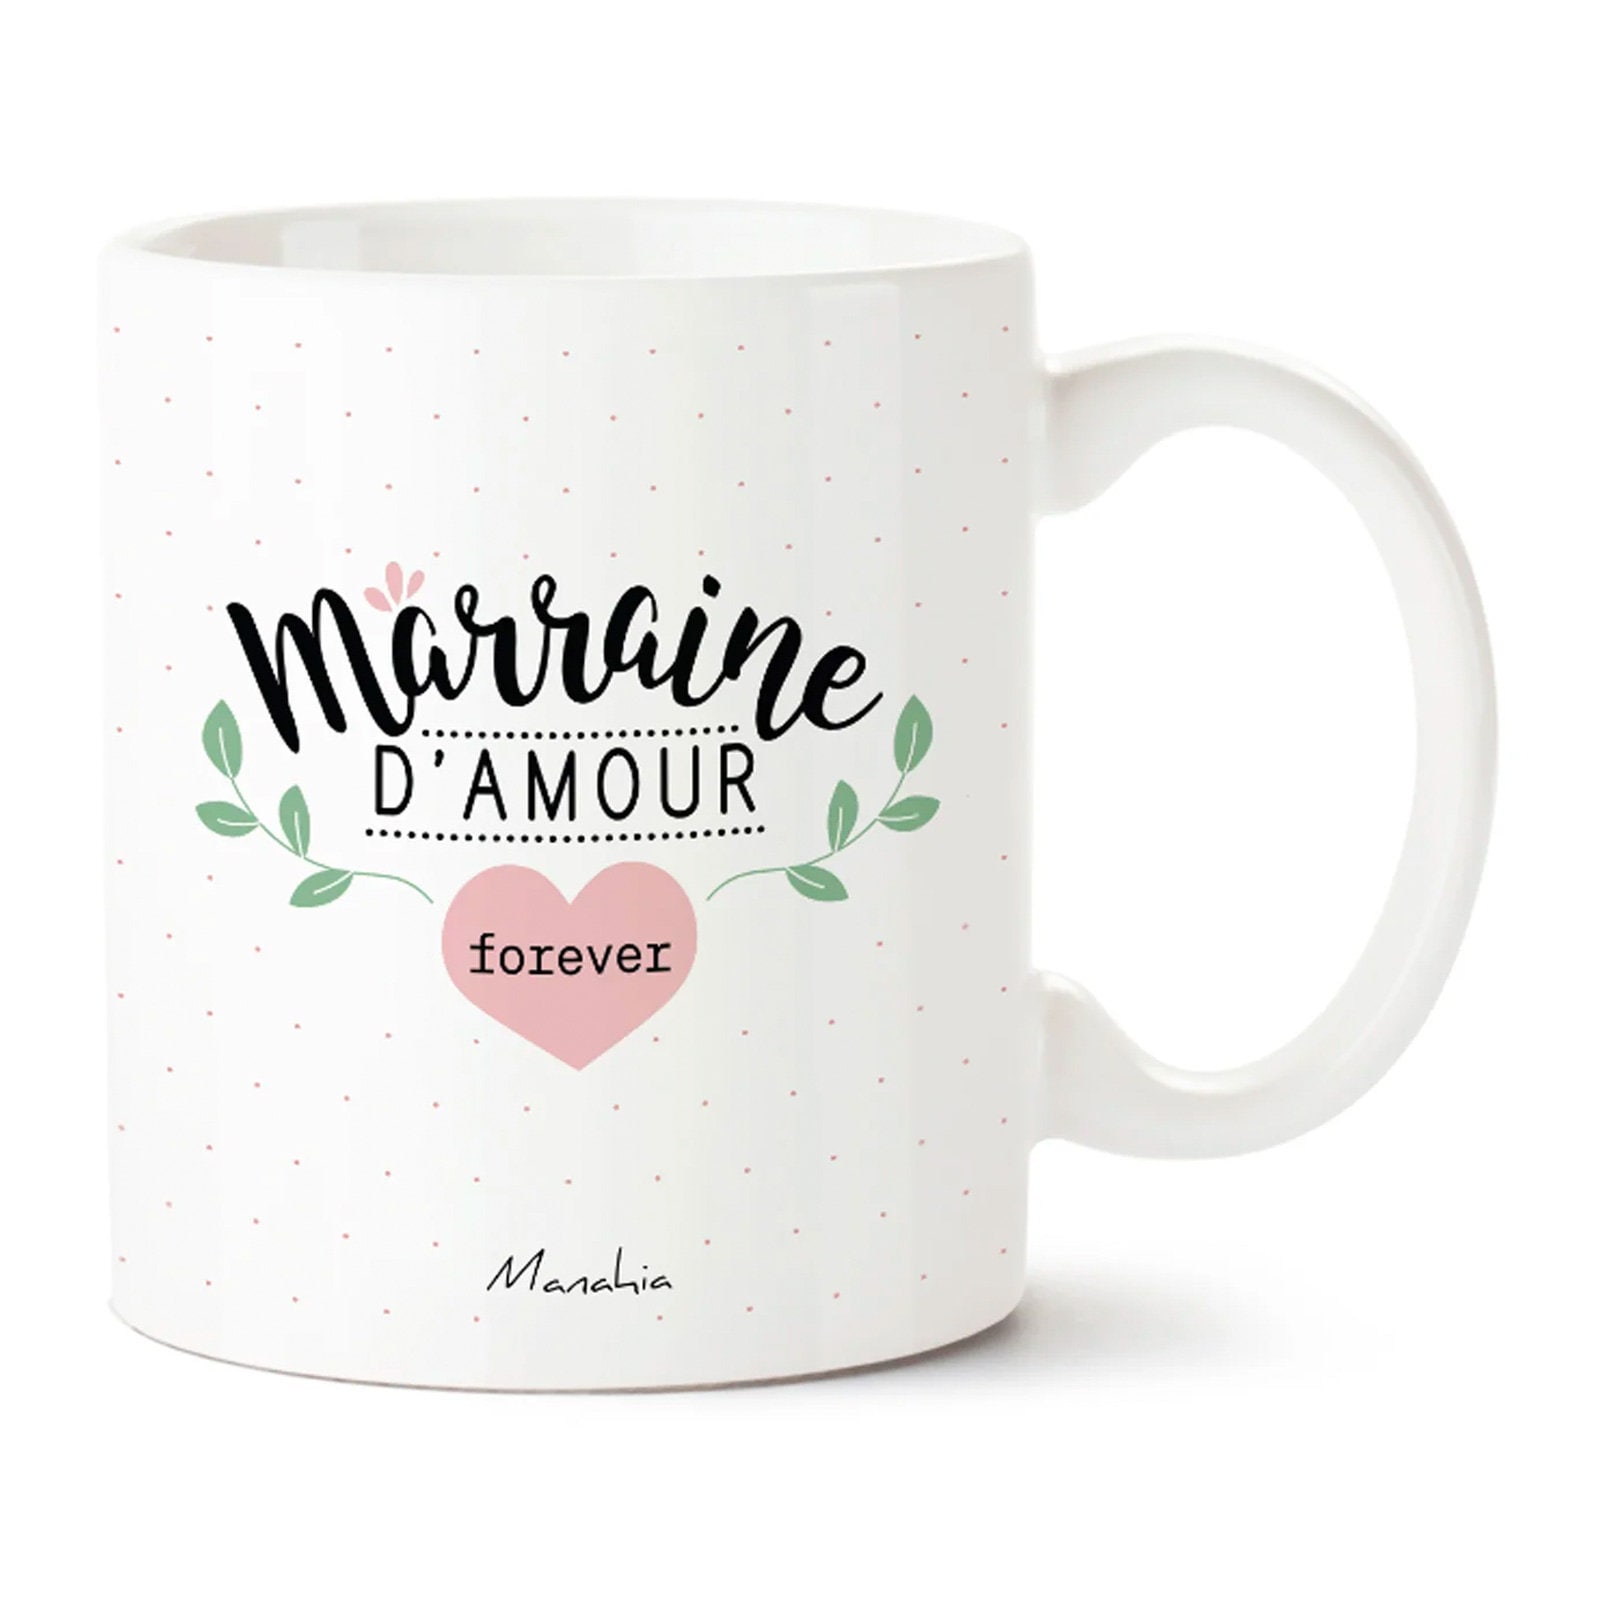 Duo de mugs émaillés - Parrain, Marraine d'amour - My Pretty